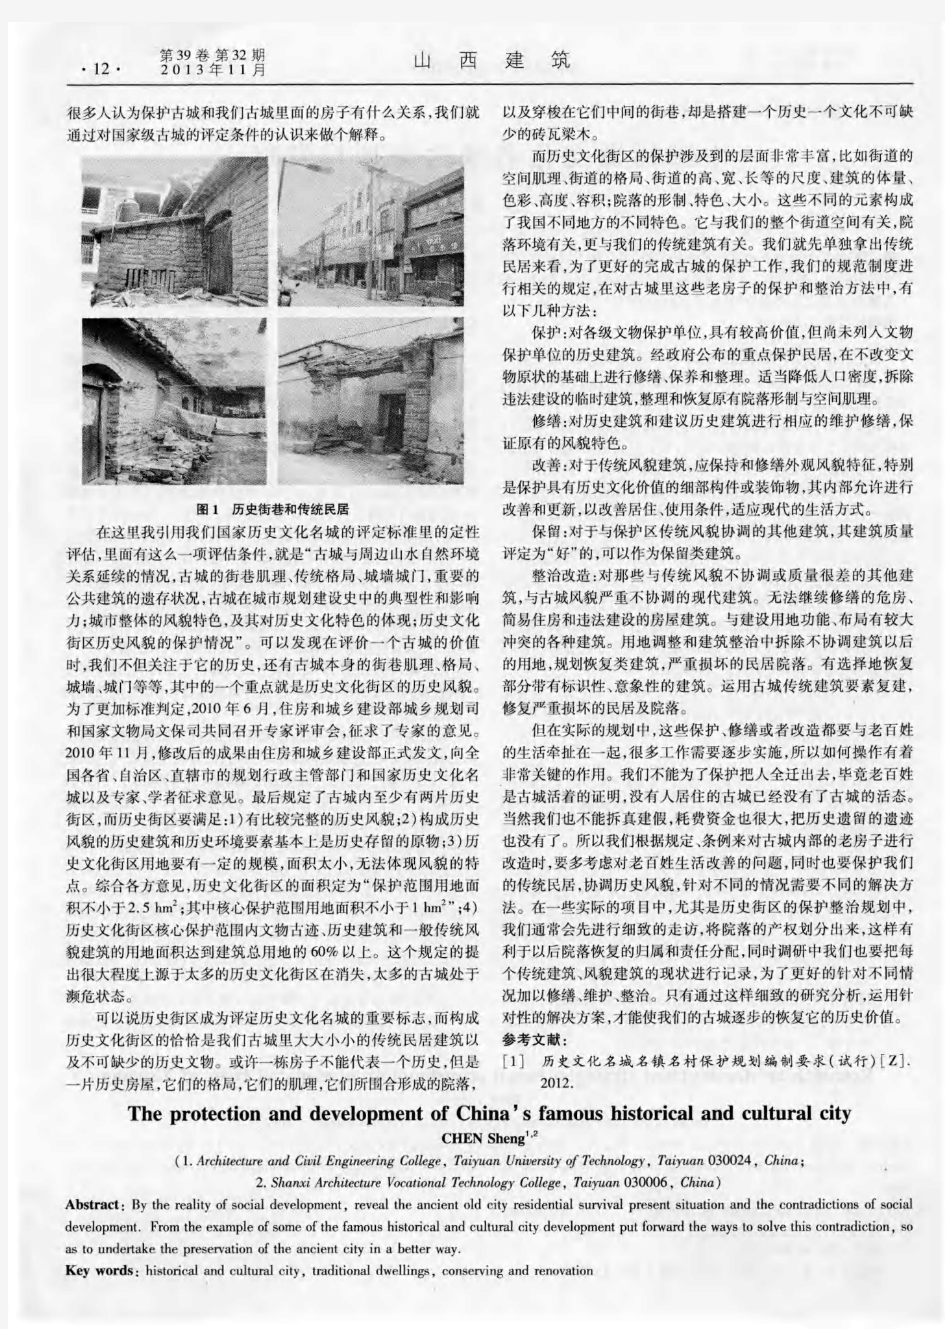 中国历史文化名城的保护与发展